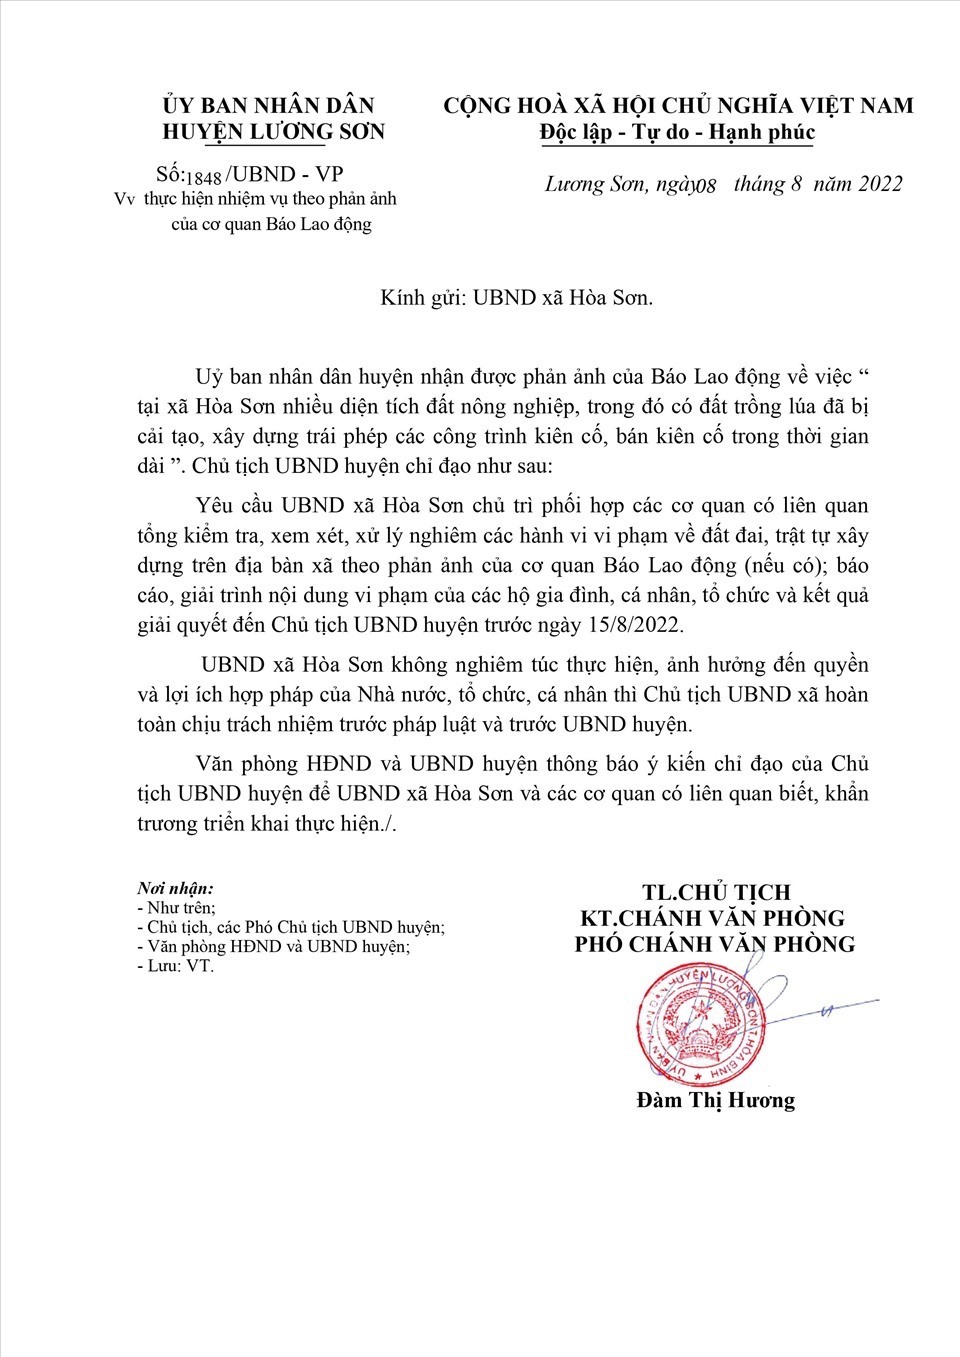 Văn bản chỉ đạo của UBND huyện Lương Sơn nêu rõ: